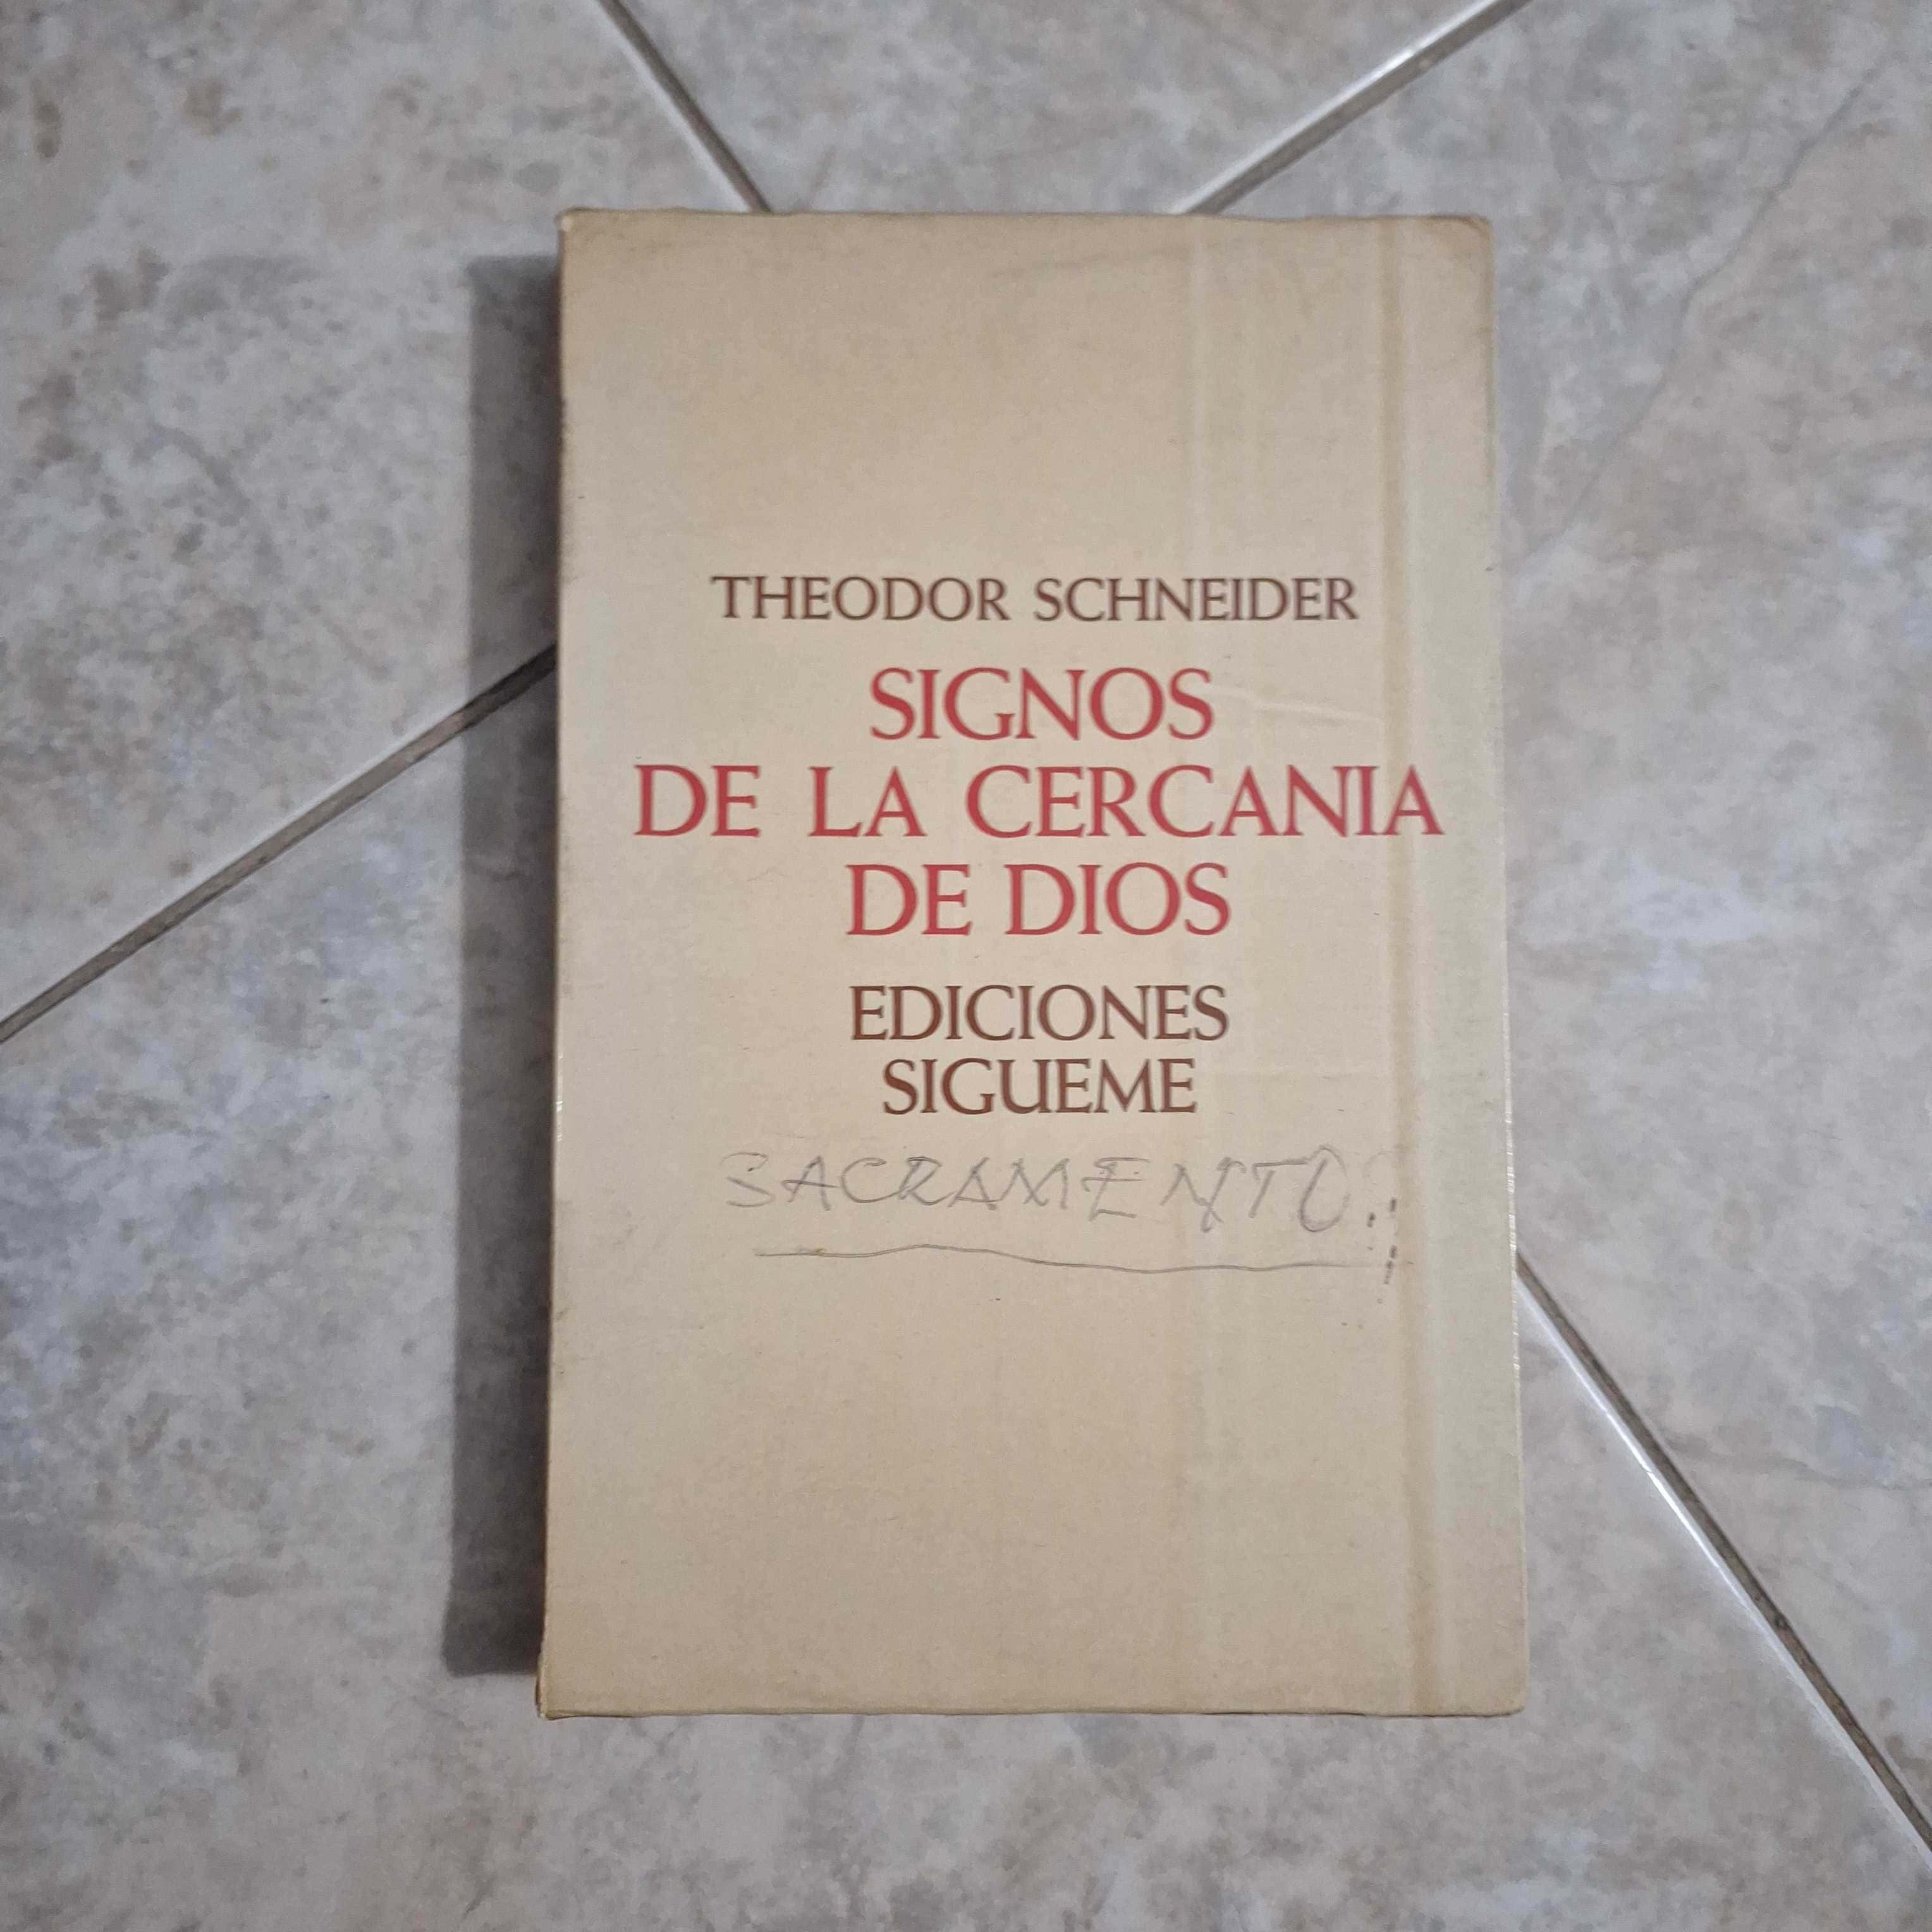 Libro de segunda mano: Signos de la cercanía de Dios